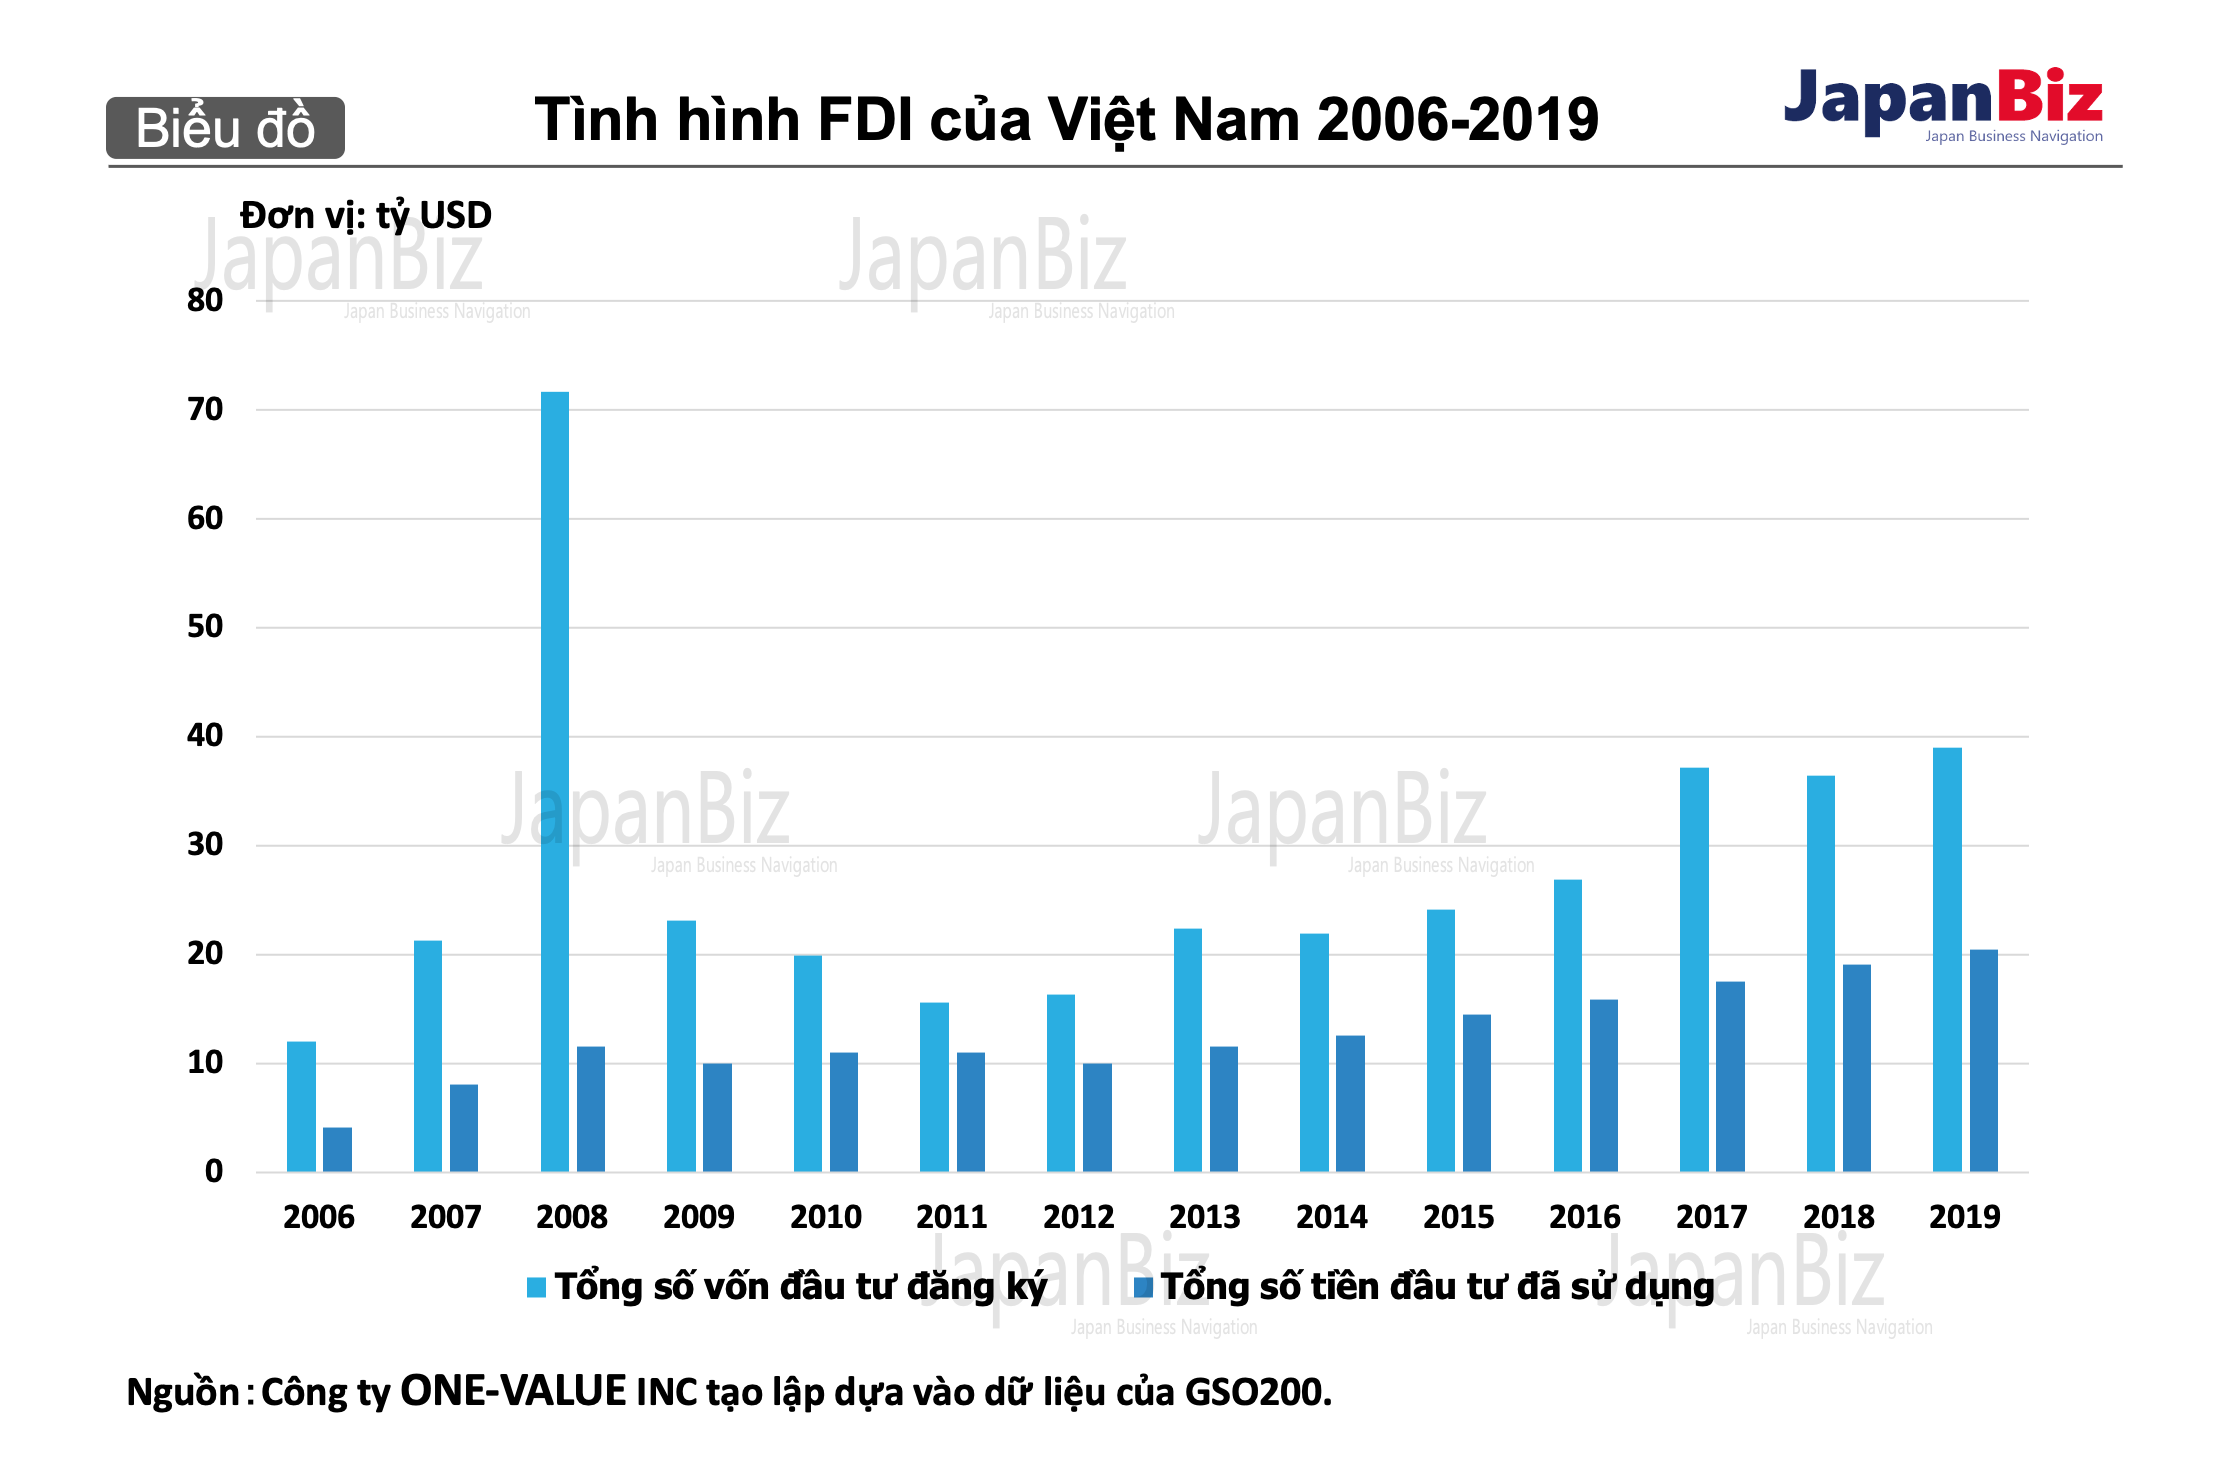 Tình hình FDI của Việt Nam 2006-2019.